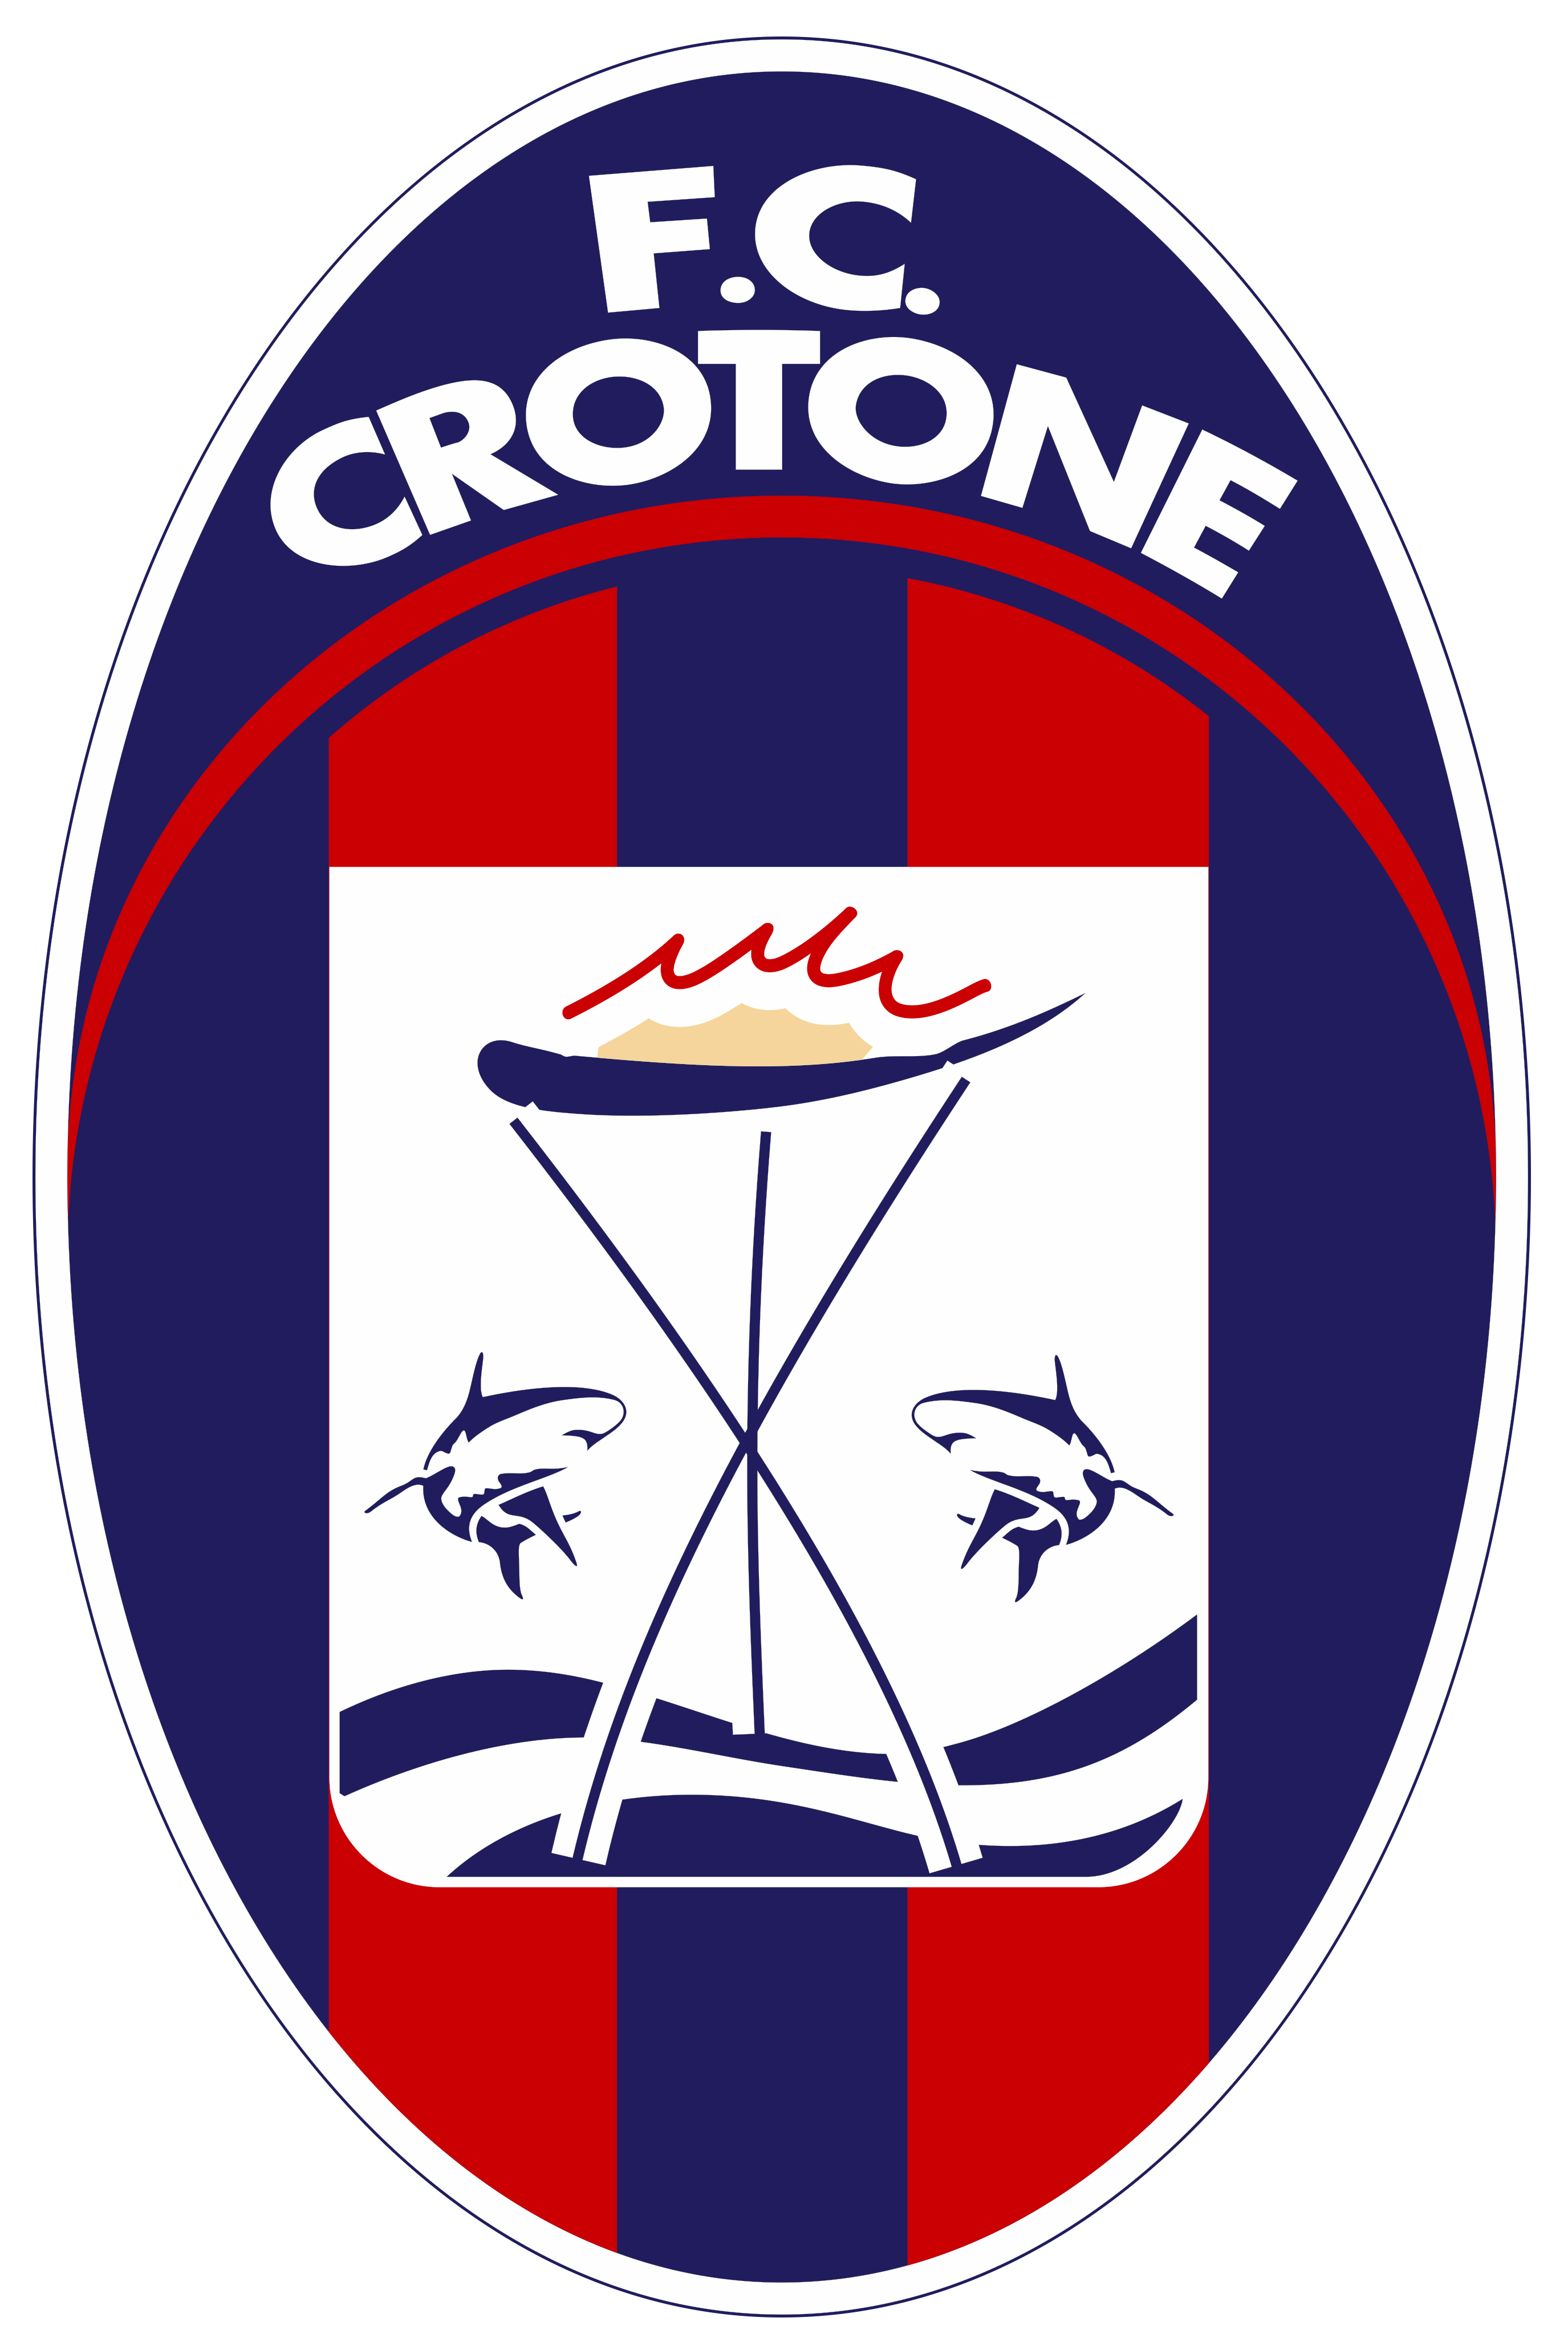 crotone_logo.png